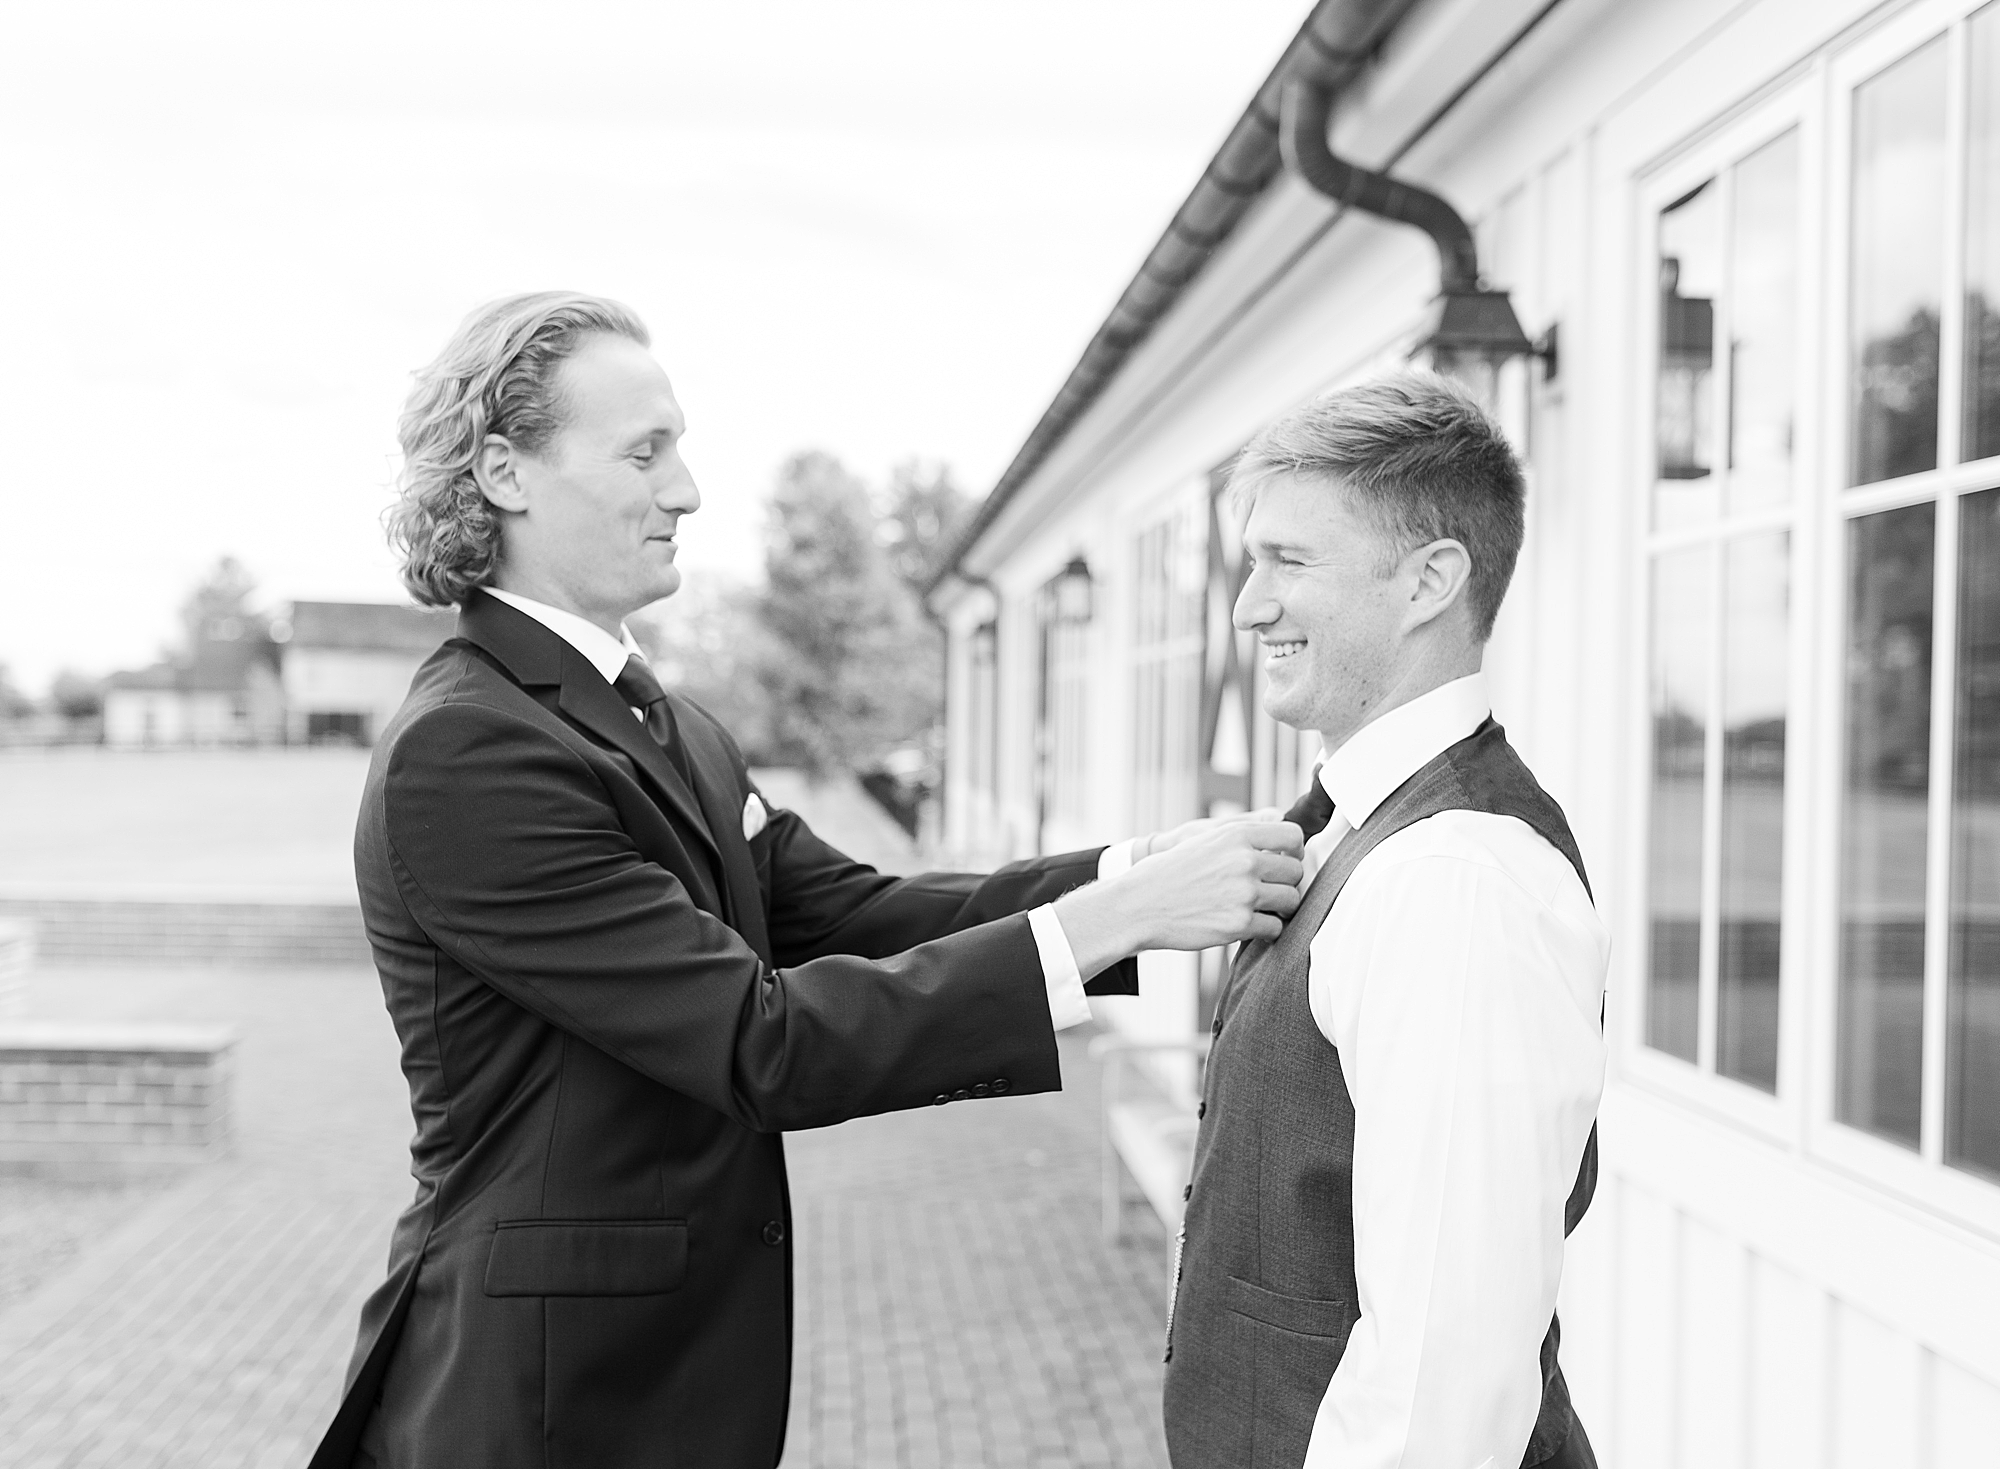 Best man helping groom tie the tie.